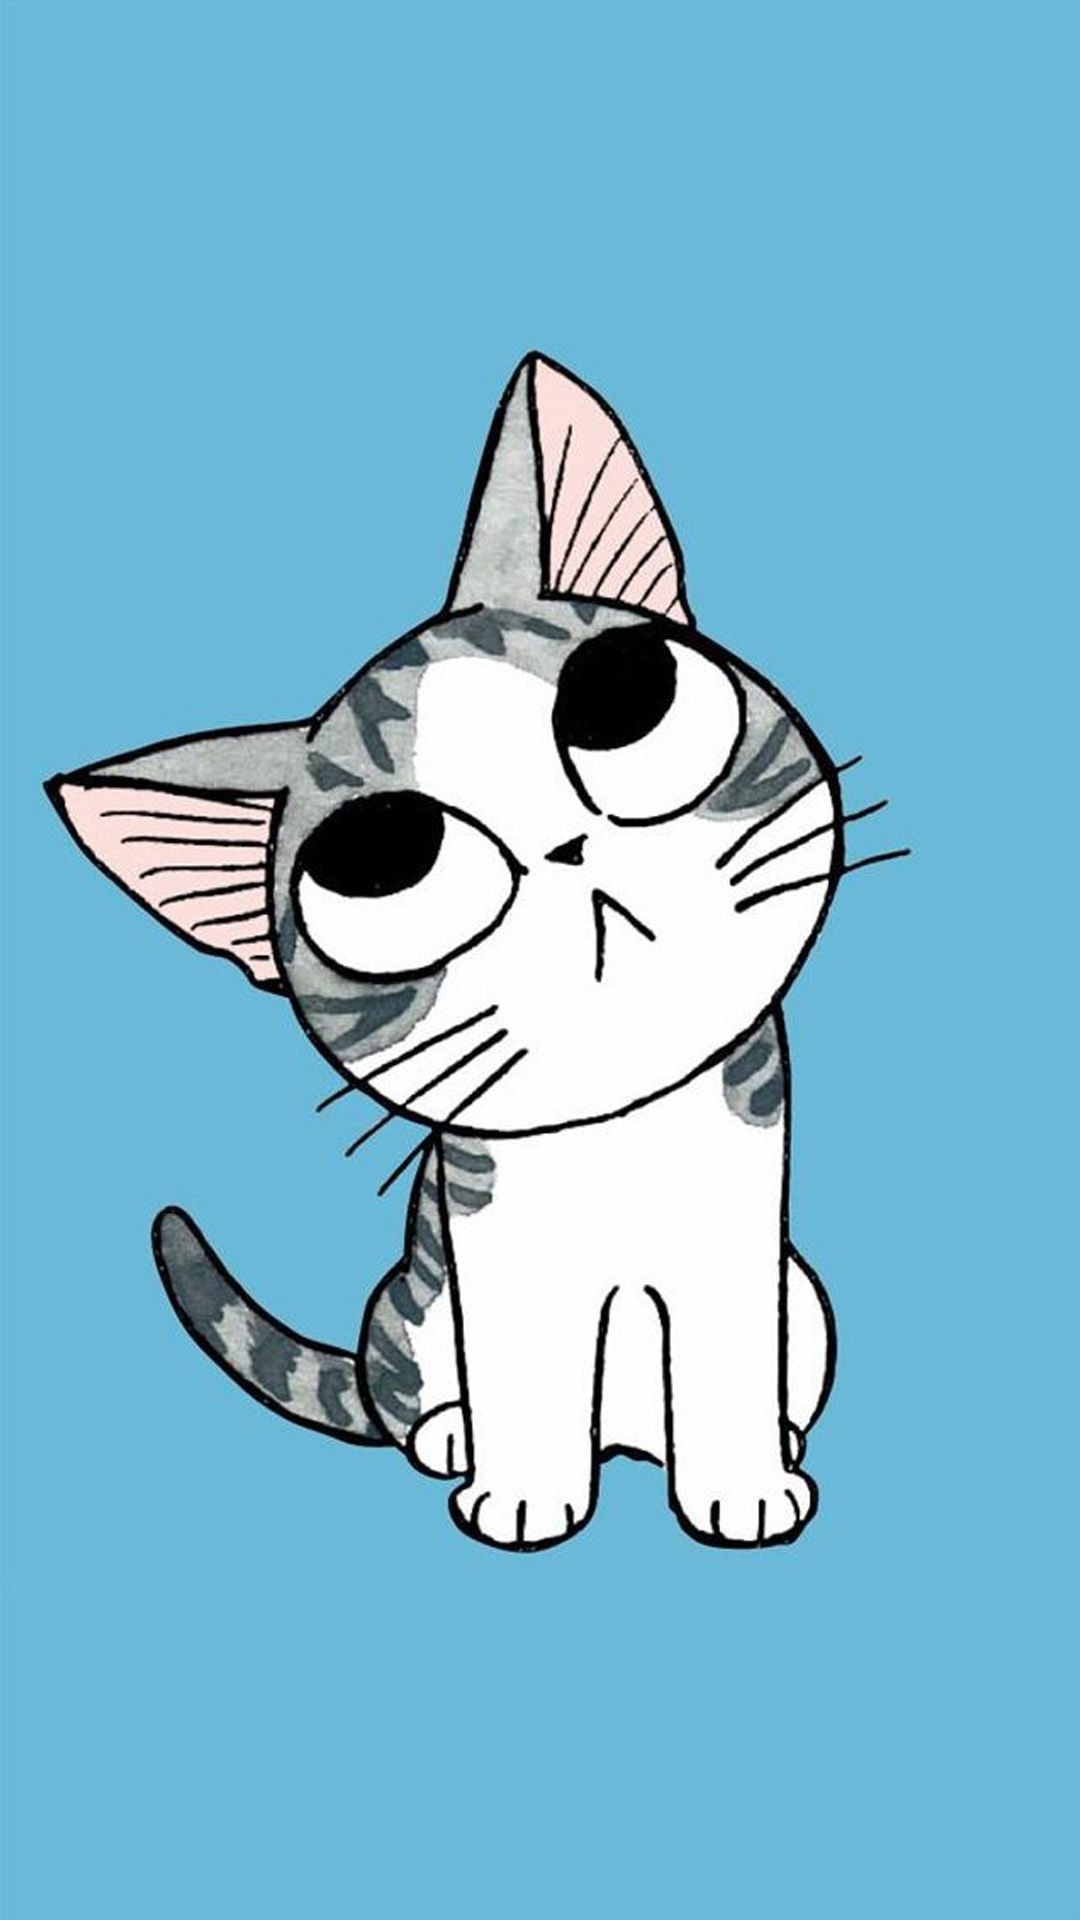 1080x1920 Cute Cartoon Kitten iPhone 6 Wallpaper Download